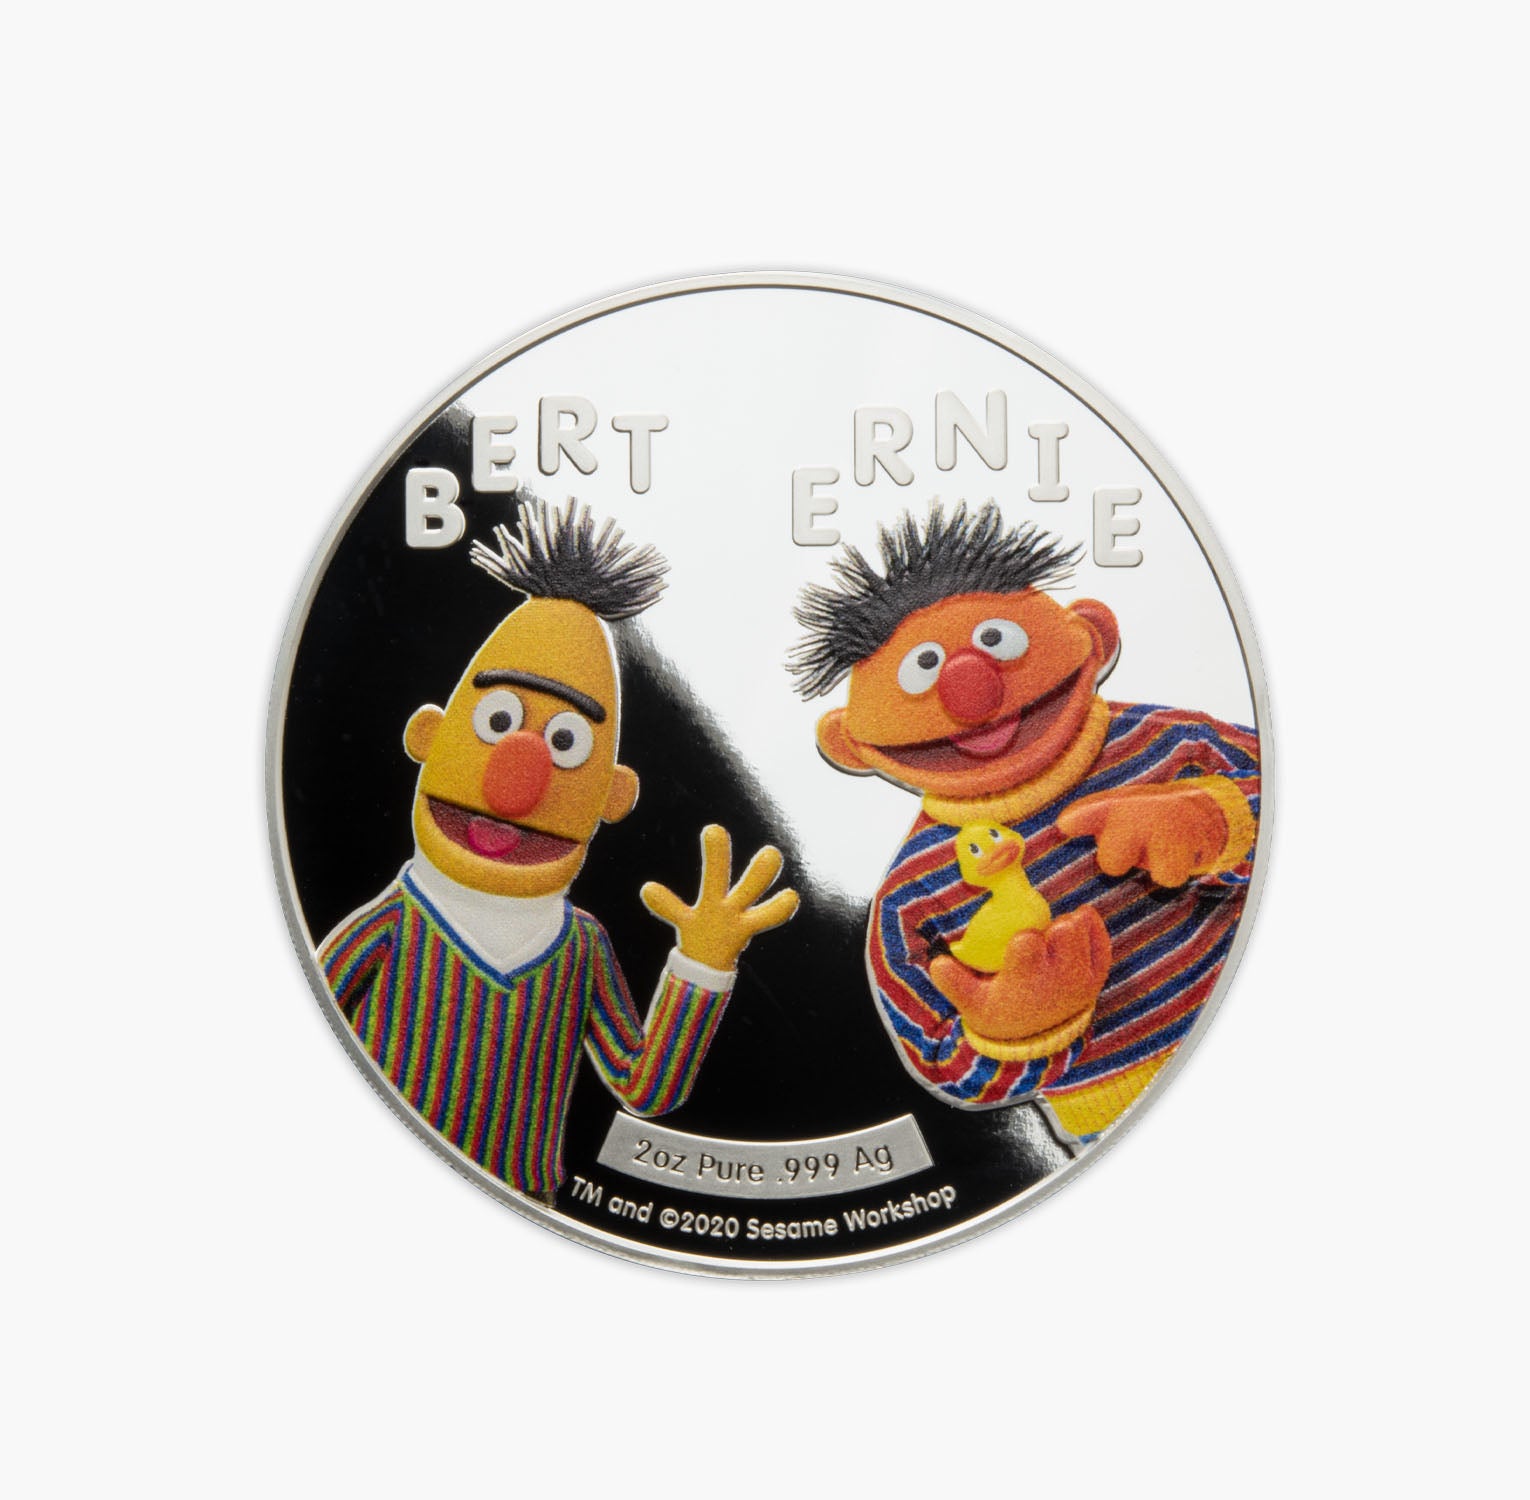 Pièce d'argent de 2 oz « Bert et Ernie » de Sesame Street